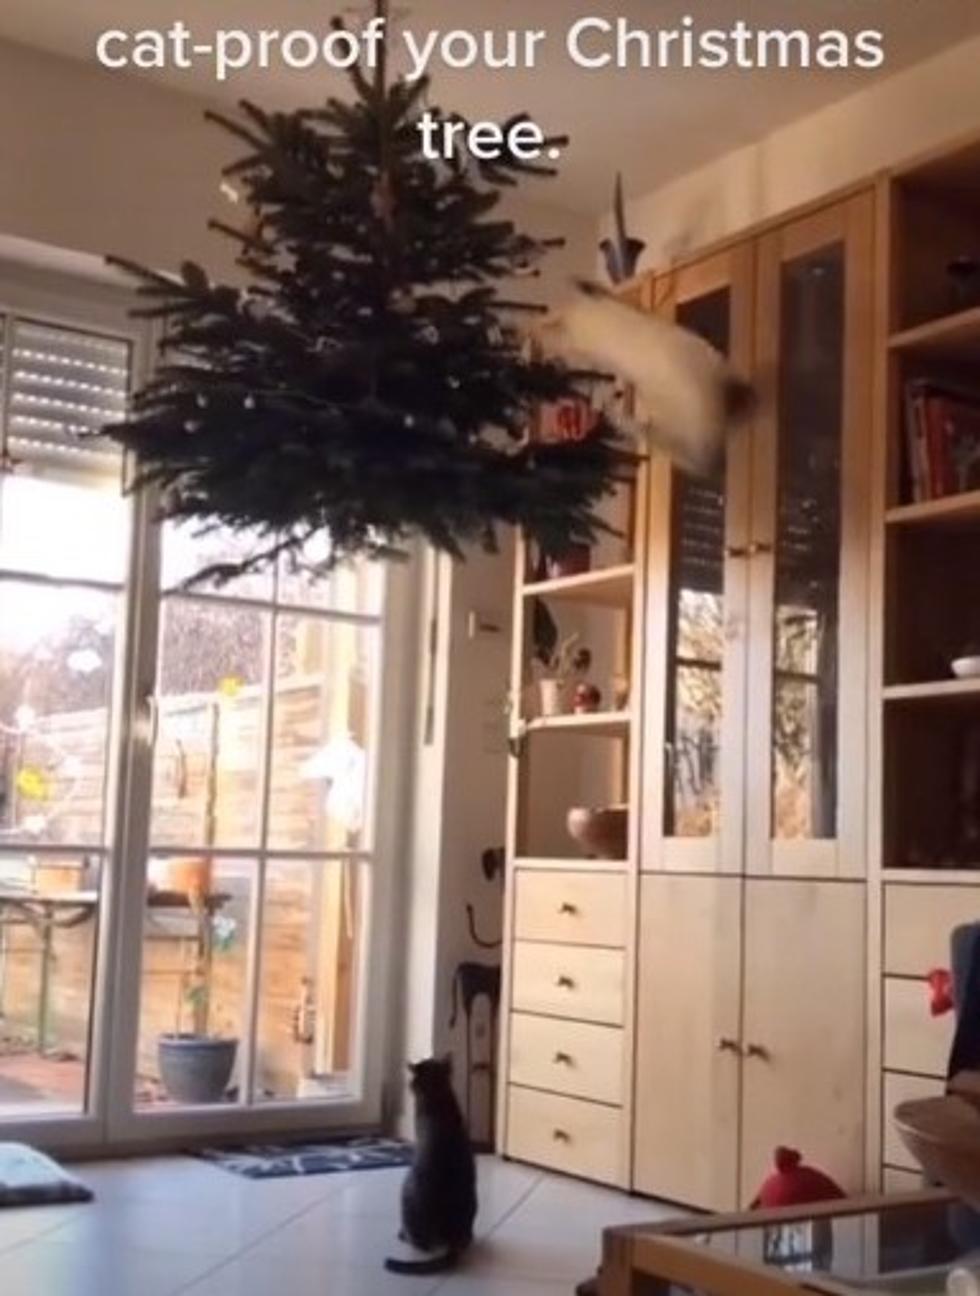 Cats vs Christmas Trees – Who Will Win?